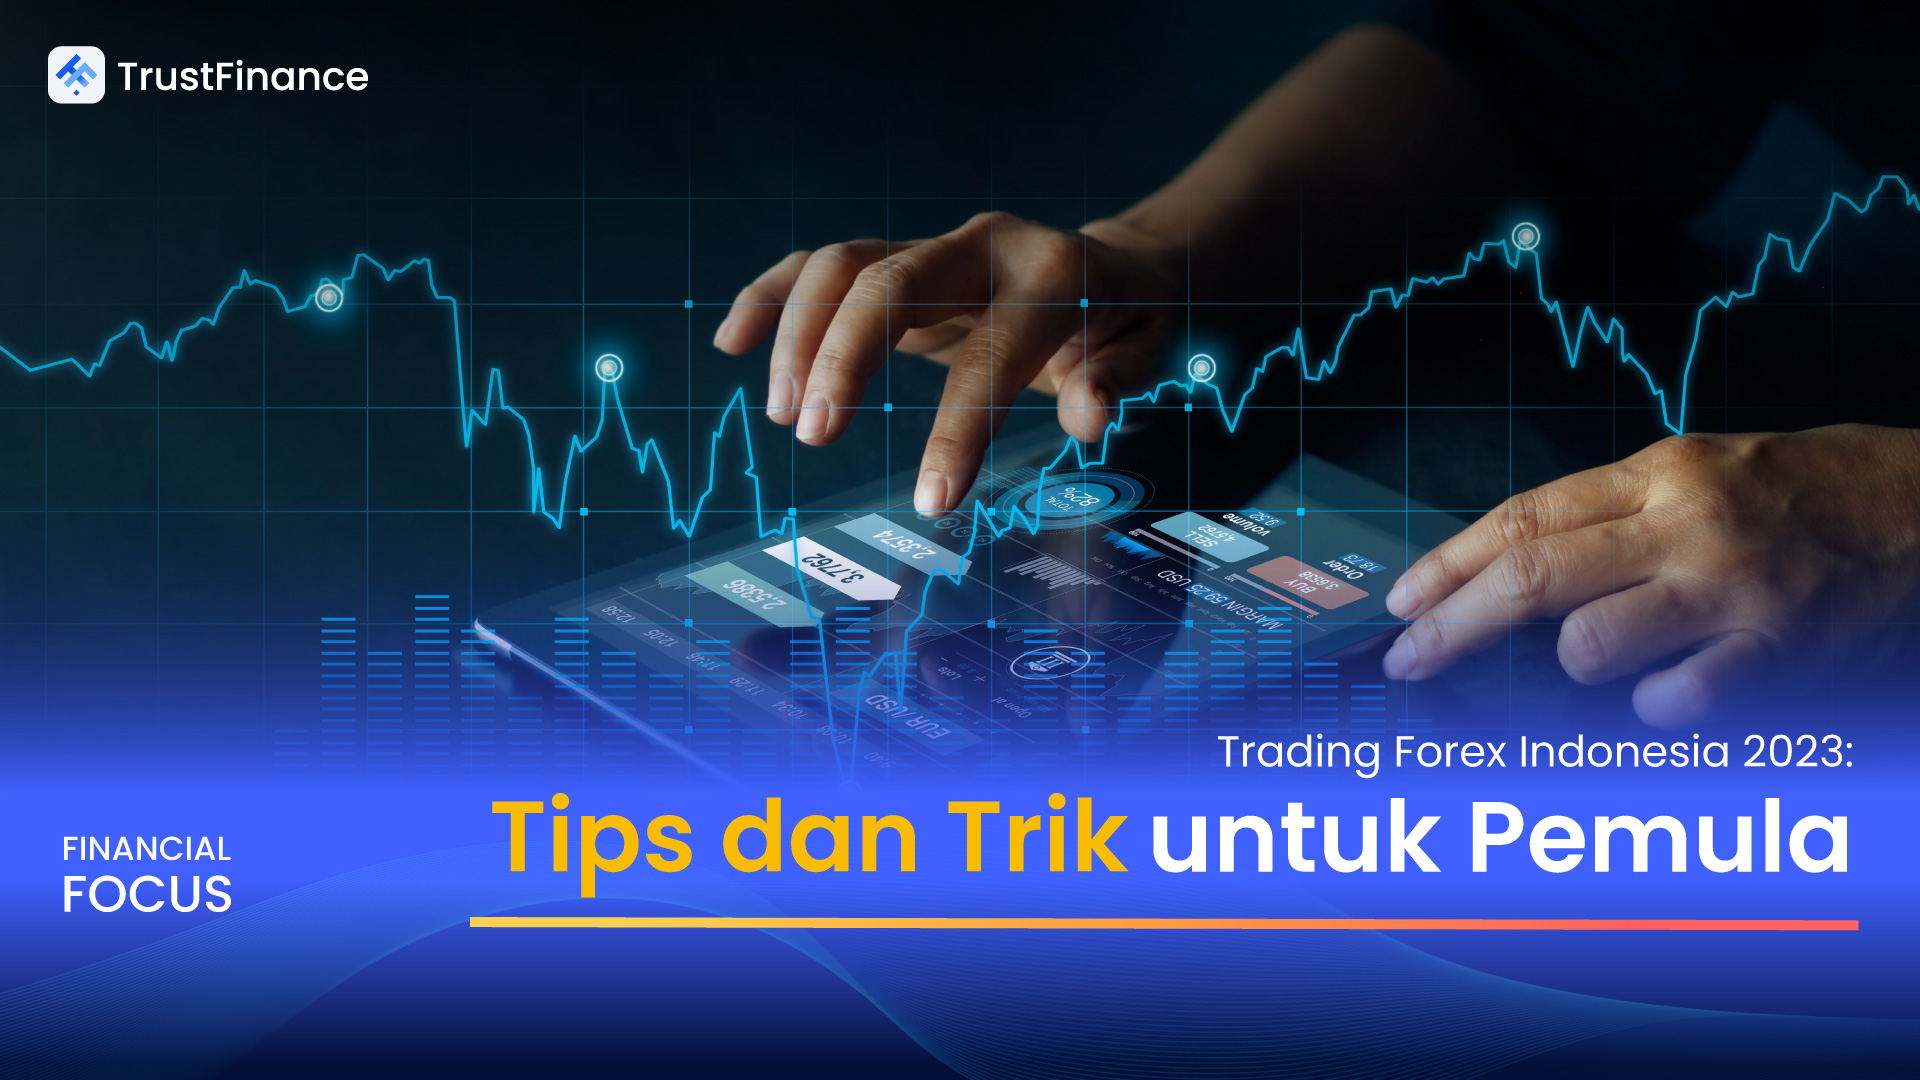 Trading Forex Indonesia 2023: Tips dan Trik untuk Pemula